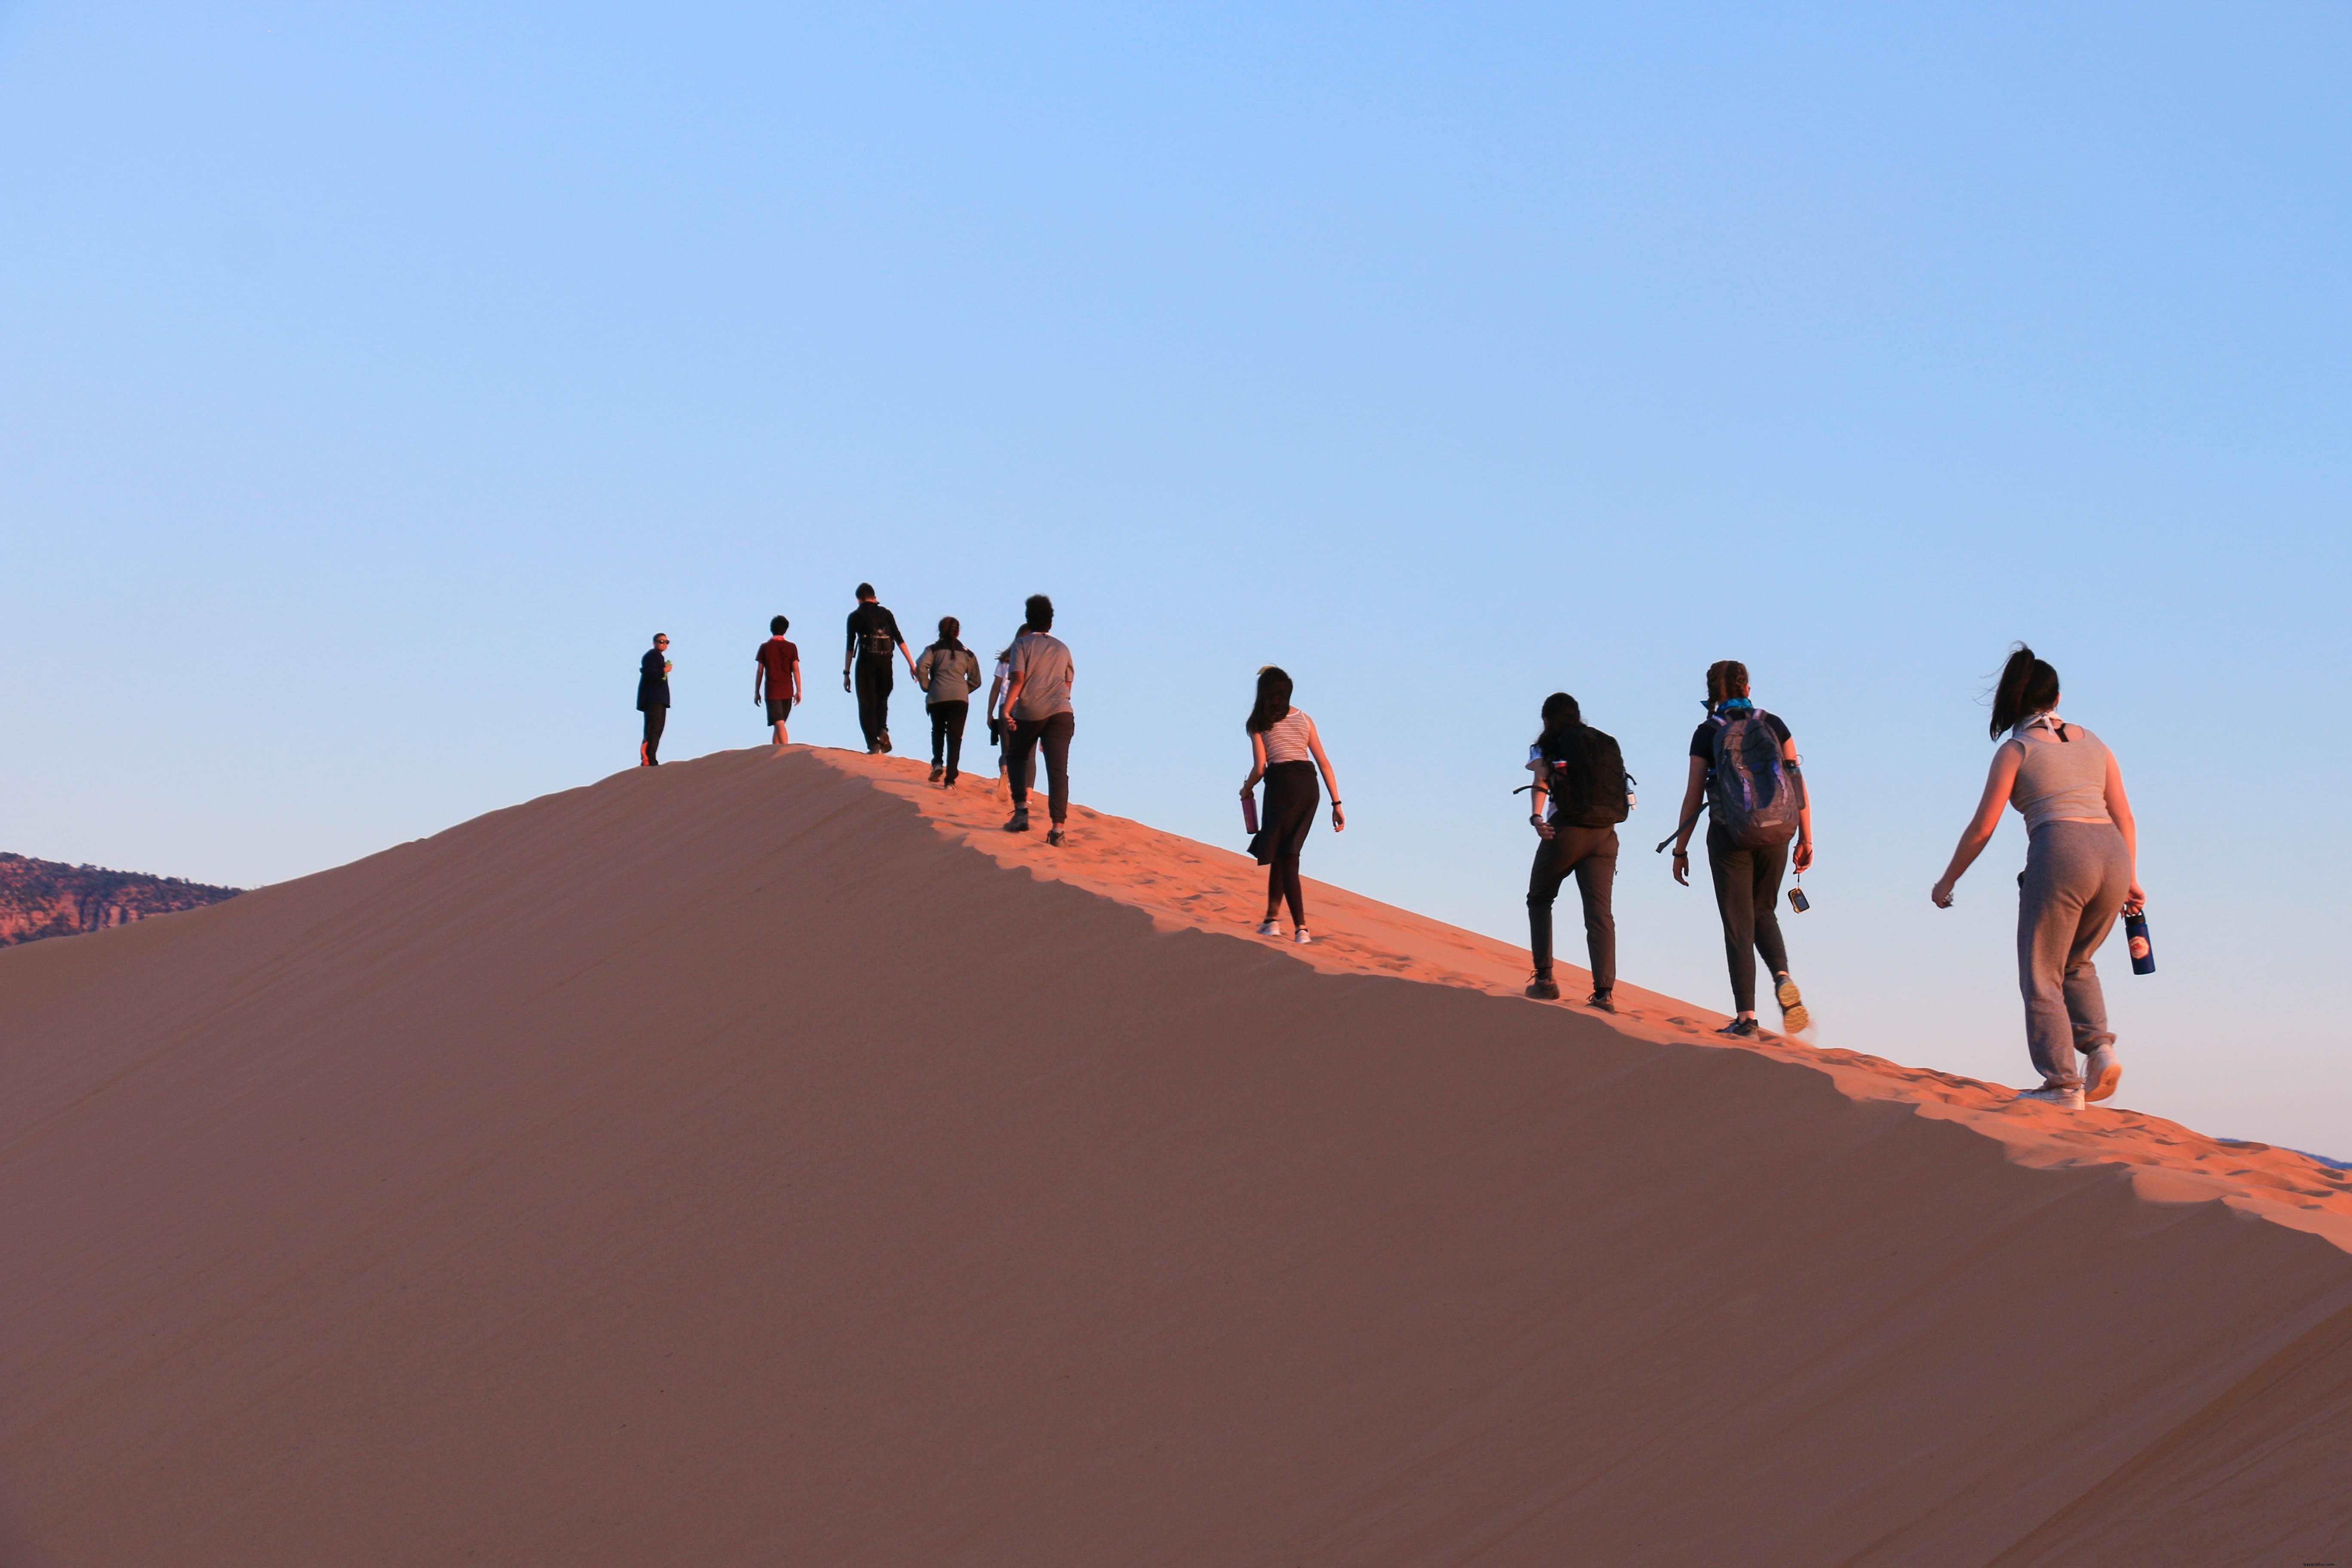 Turistas subindo em uma duna de areia íngreme foto 